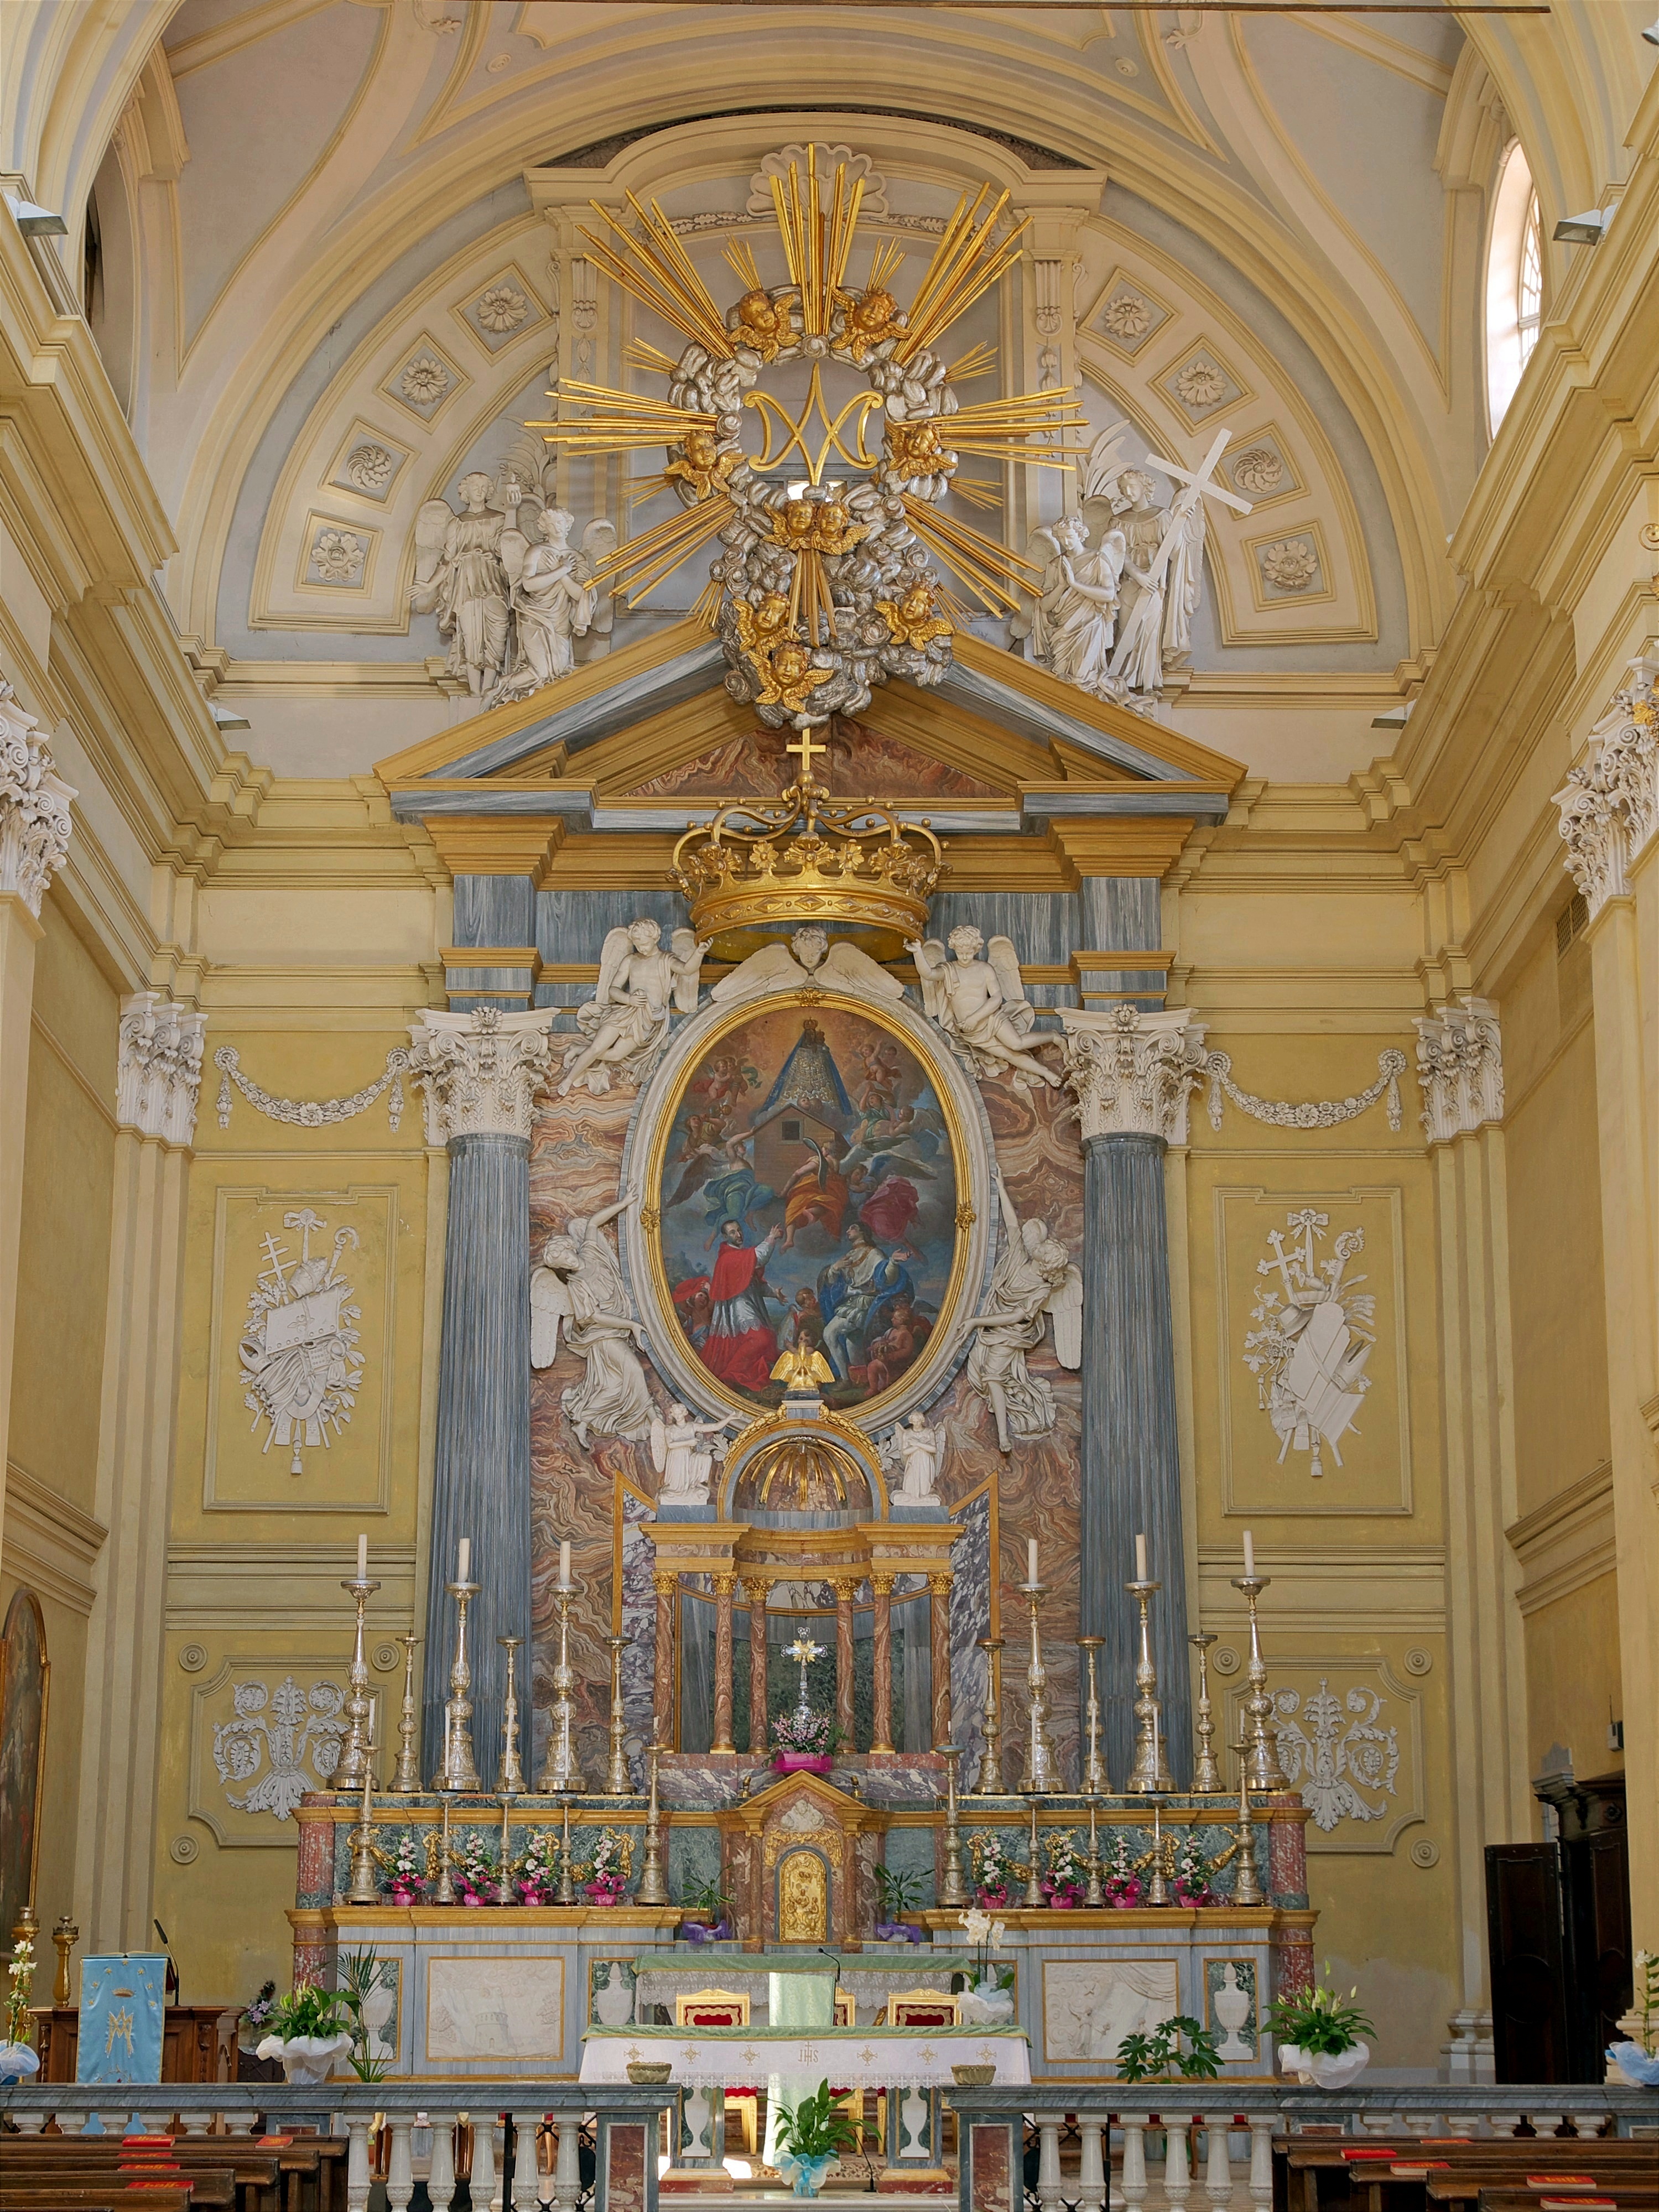 Graglia (Biella, Italy): Main altar of the church of the Sanctuary of the Virgin of Loreto - Graglia (Biella, Italy)